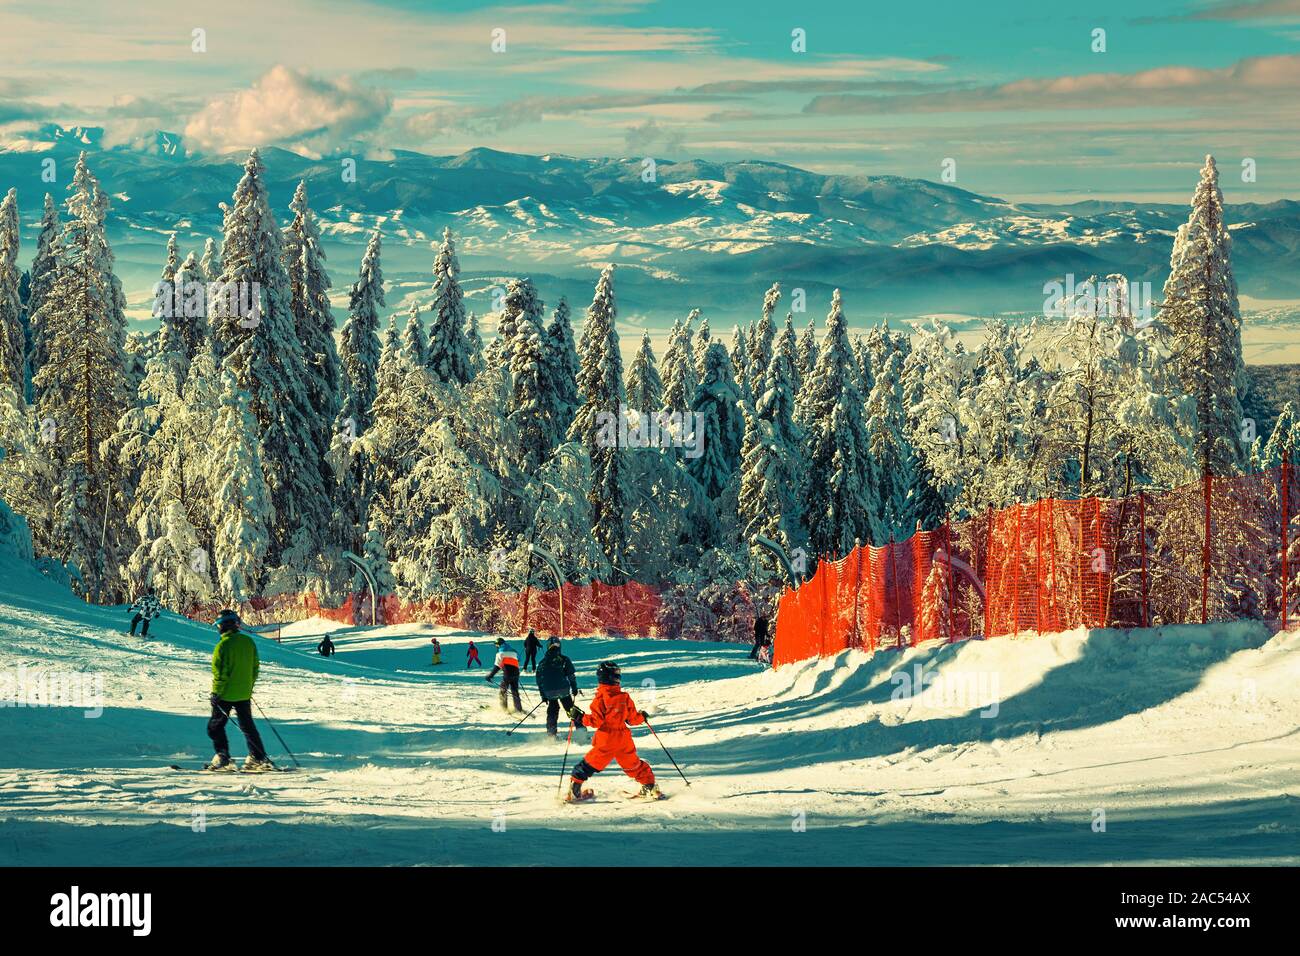 Fabelhafte Winter Skigebiet mit Schnee bedeckten Bäumen. Aktive Skifahrer skifahren Skifahren und genießen die Natur, Poiana Brasov, Karpaten, Siebenbürgen, R Stockfoto